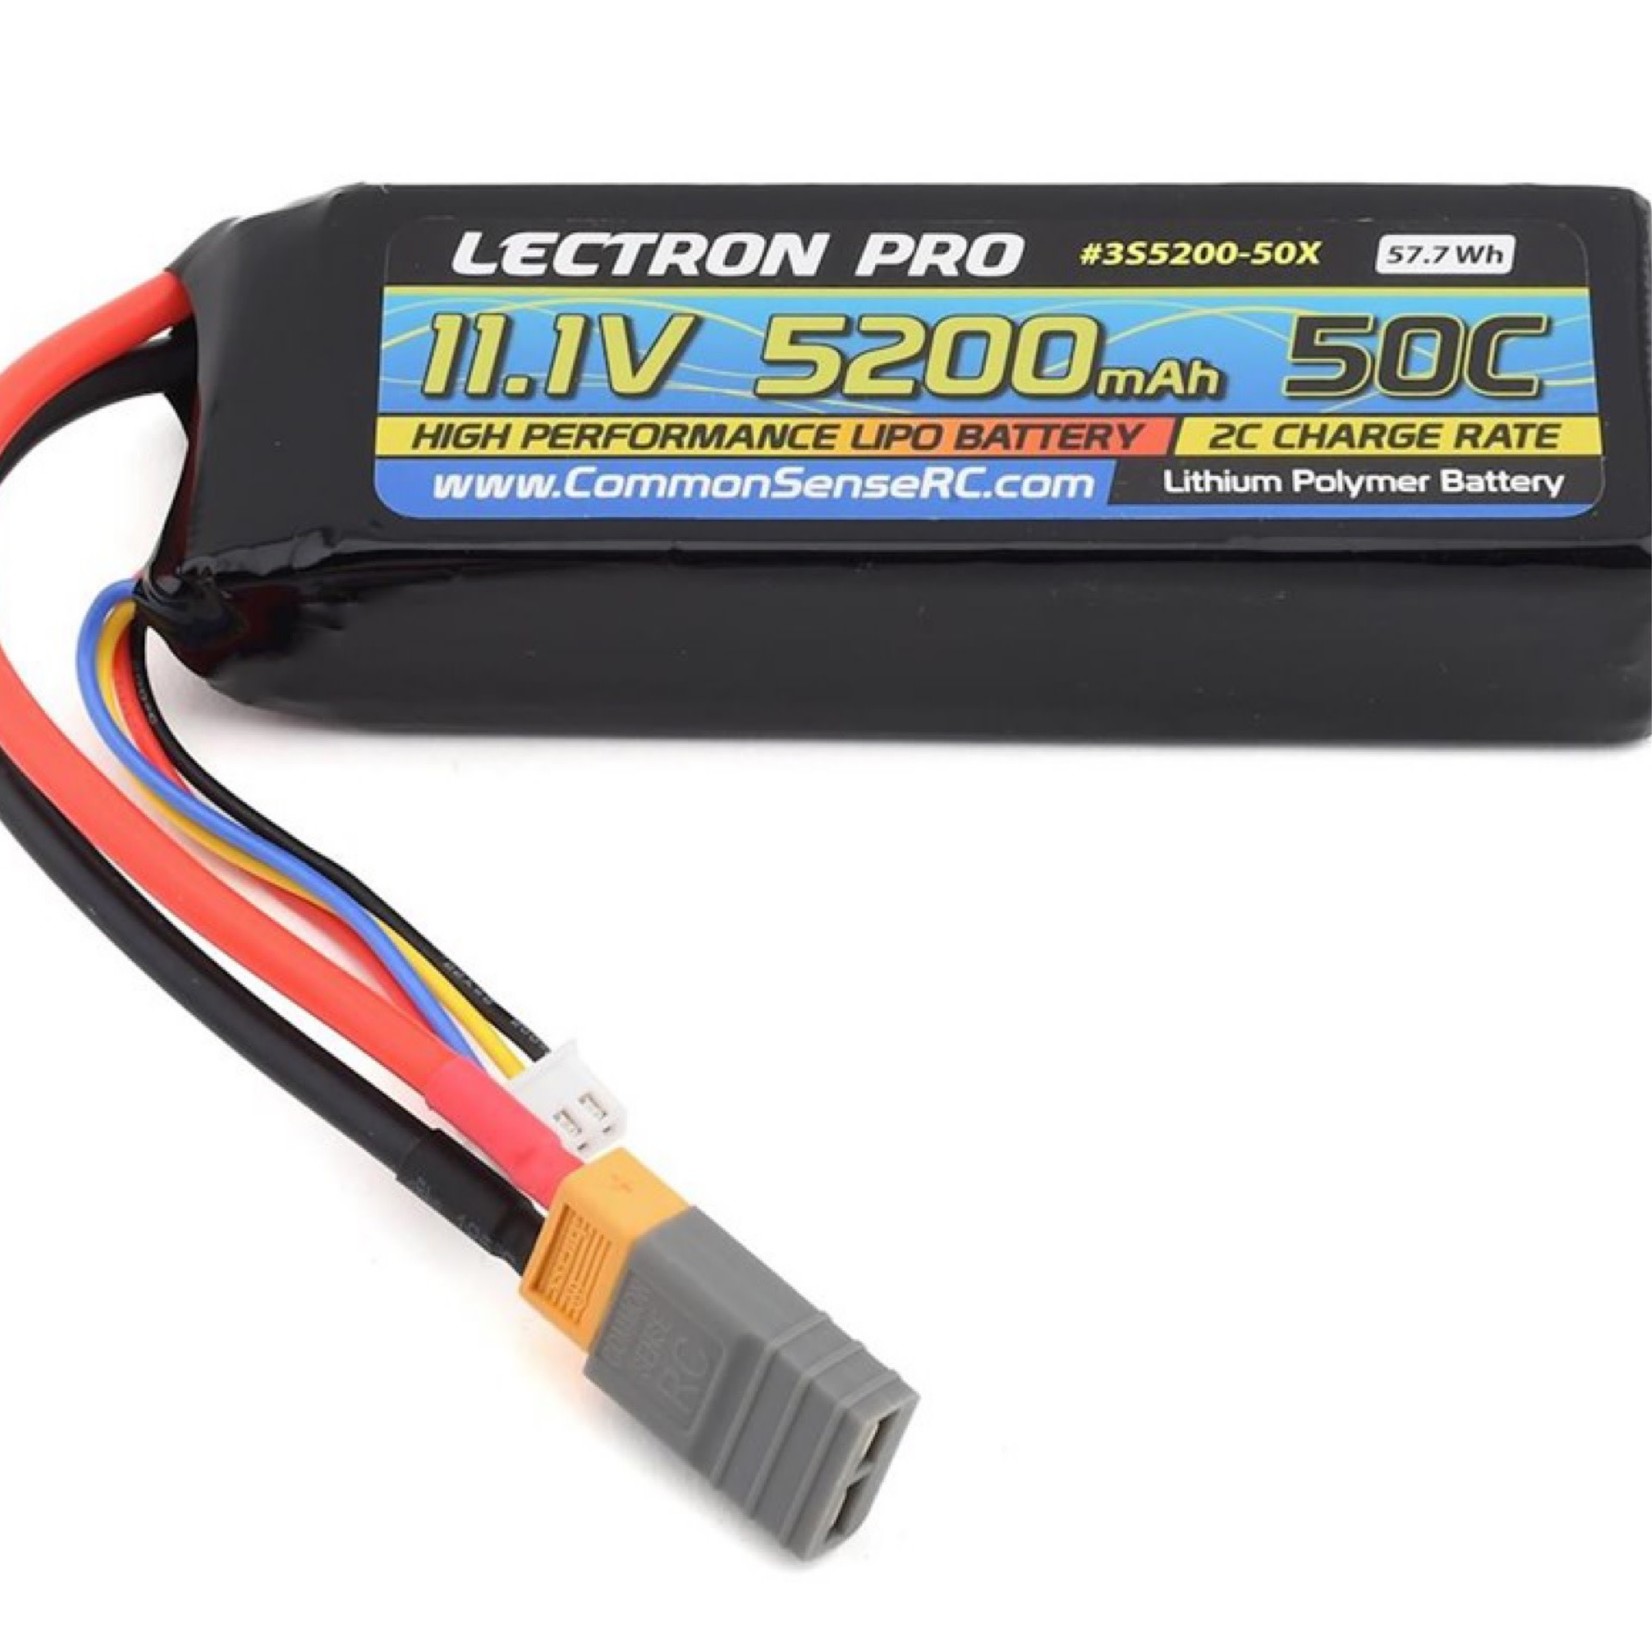 Common Sense RC Common Sense RC Lectron Pro 3S 50C LiPo Battery w/XT60 (11.1V/5200mAh) #3S5200-50X